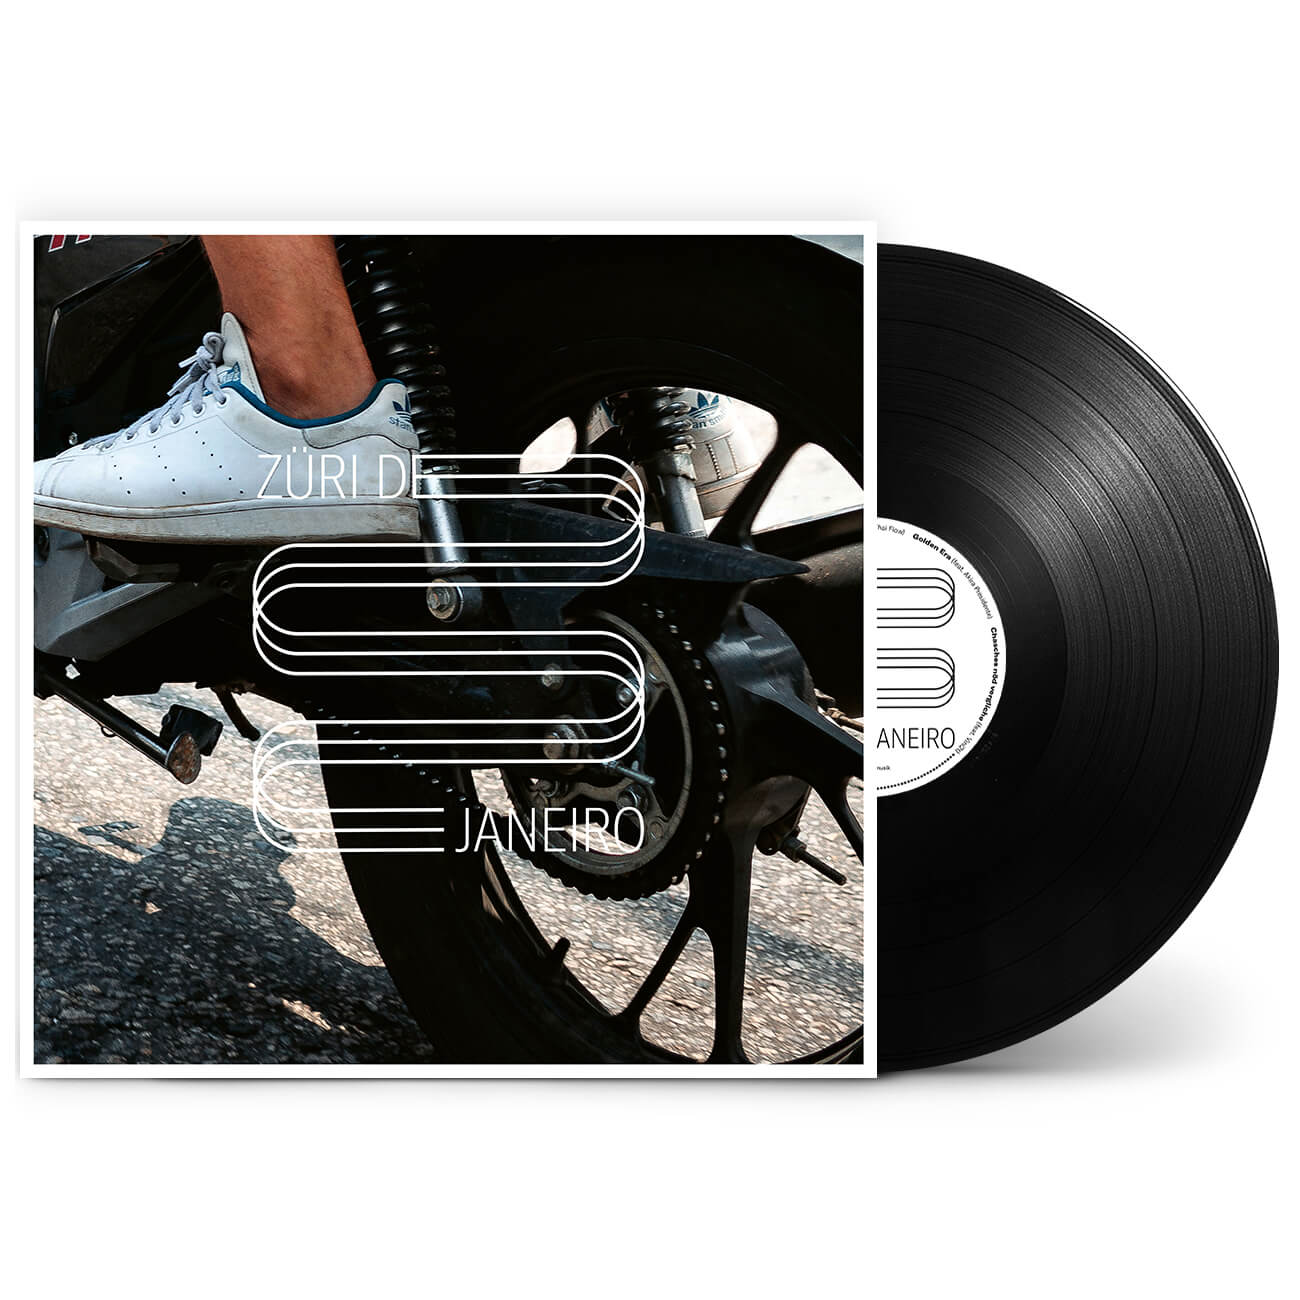 Texter | Vinyl | Züri de Janeiro